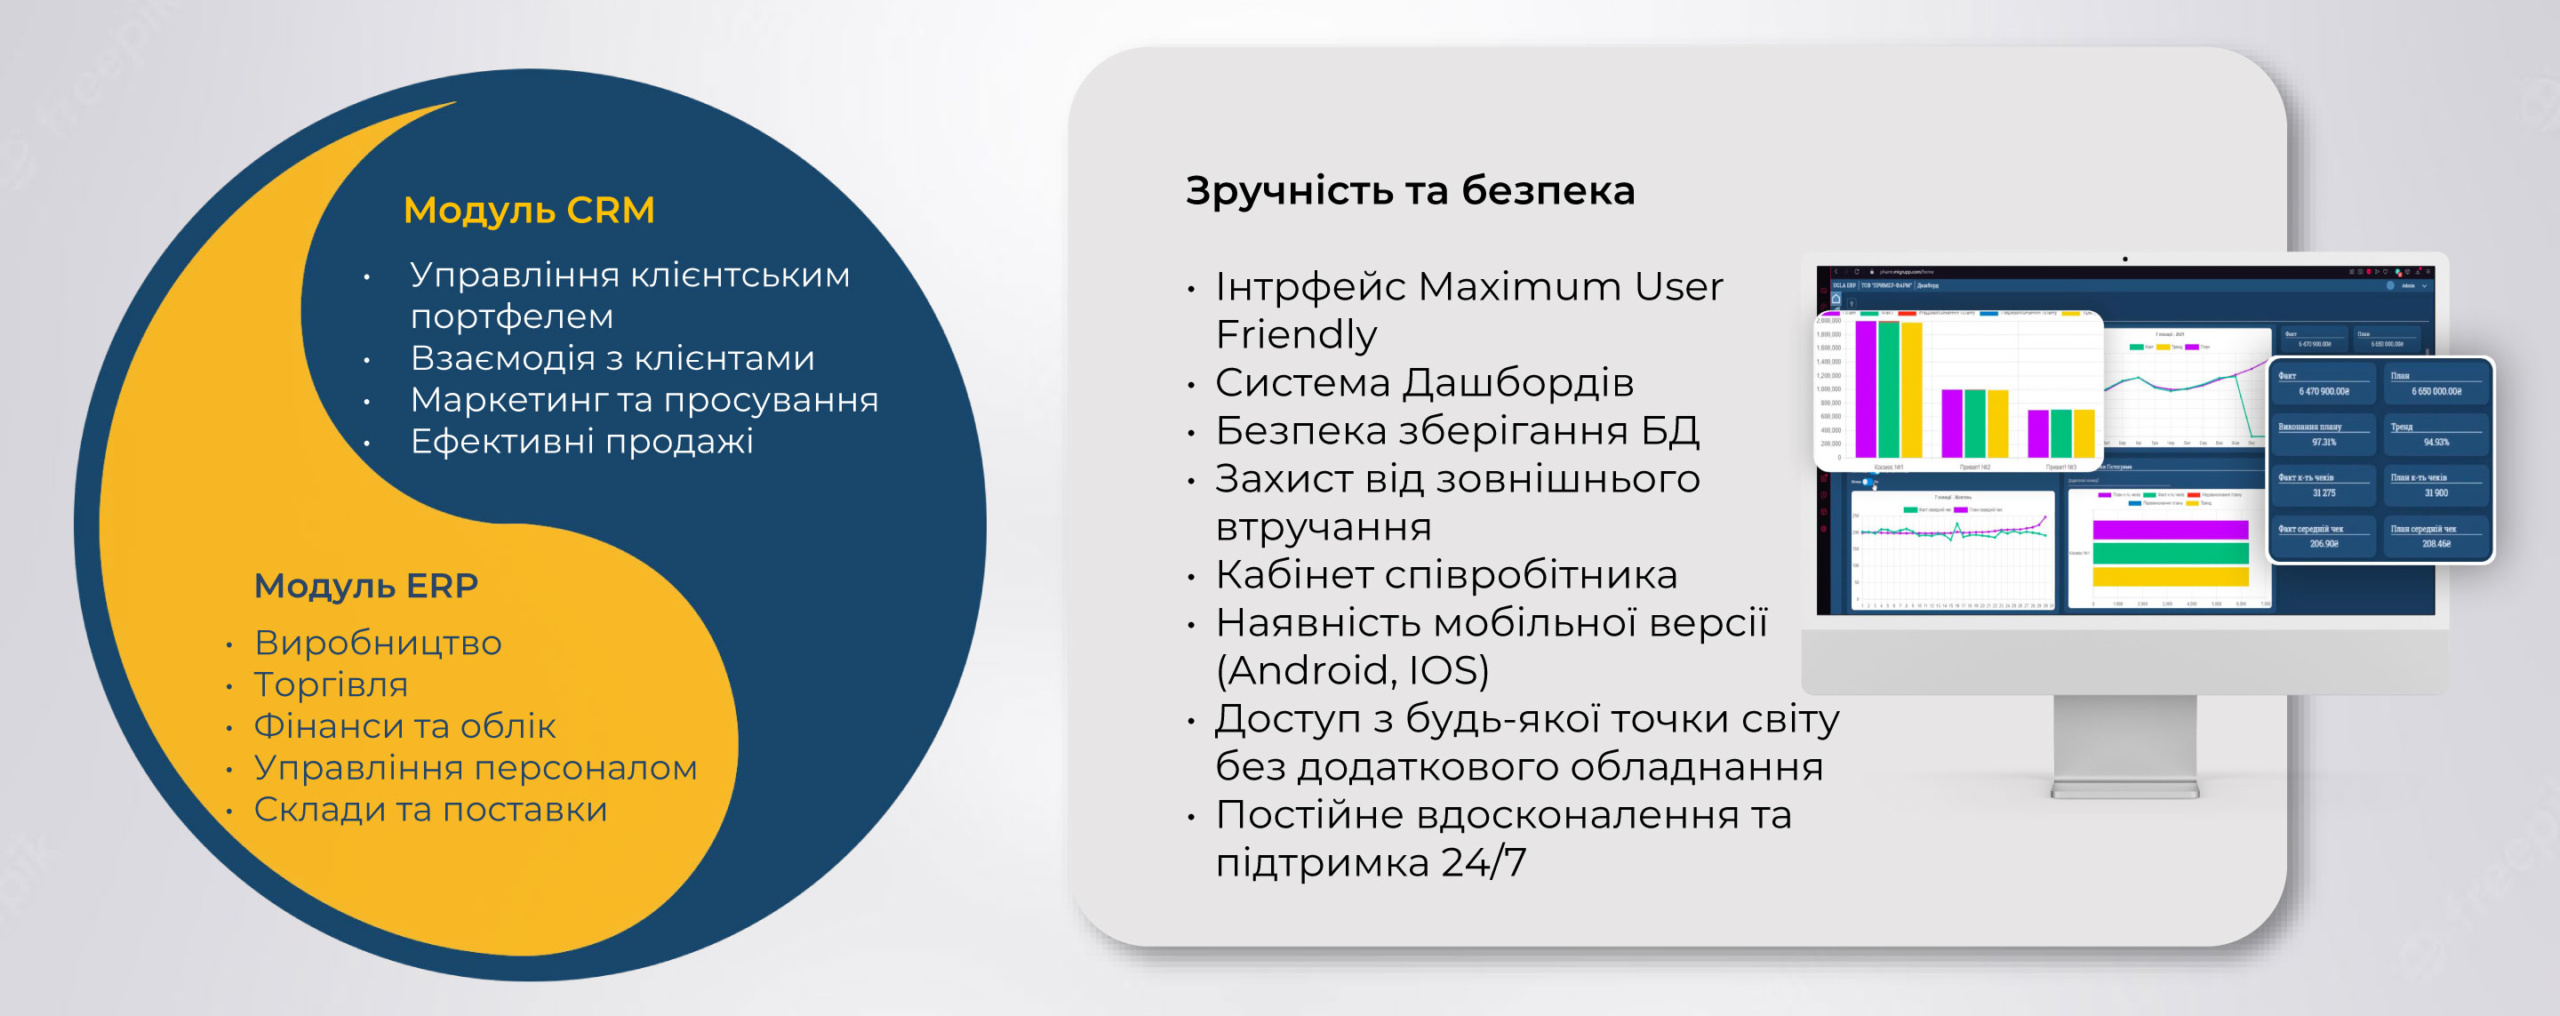 Українська cистема UGLA для управління компанією: зручний інтерфейс, штучний інтелект і безкоштовний період